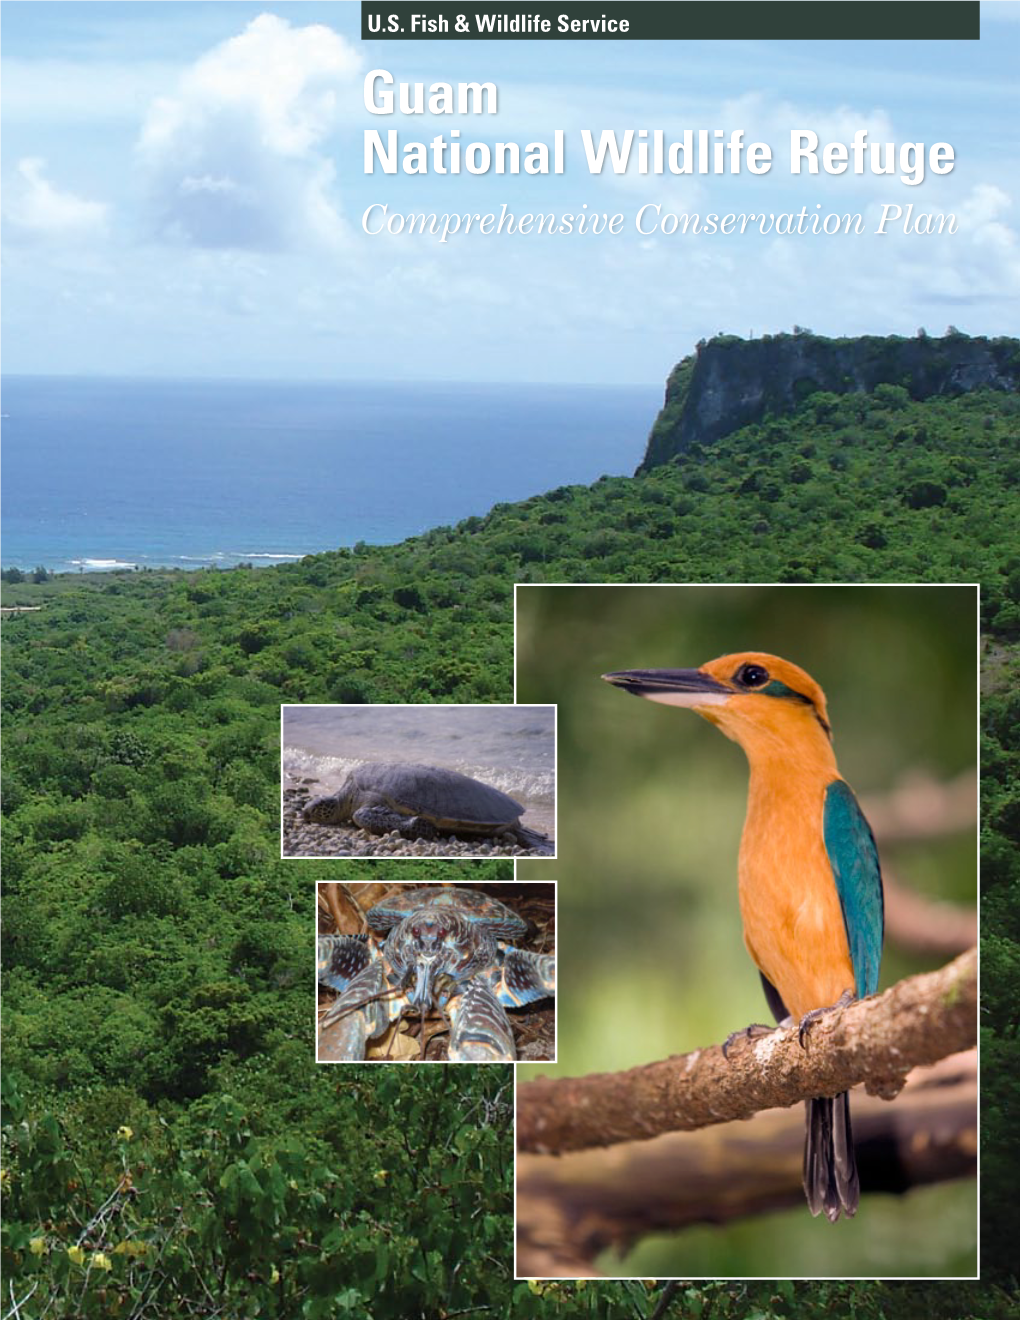 Guam National Wildlife Refuge Draft Comprehensive Conservation Plan